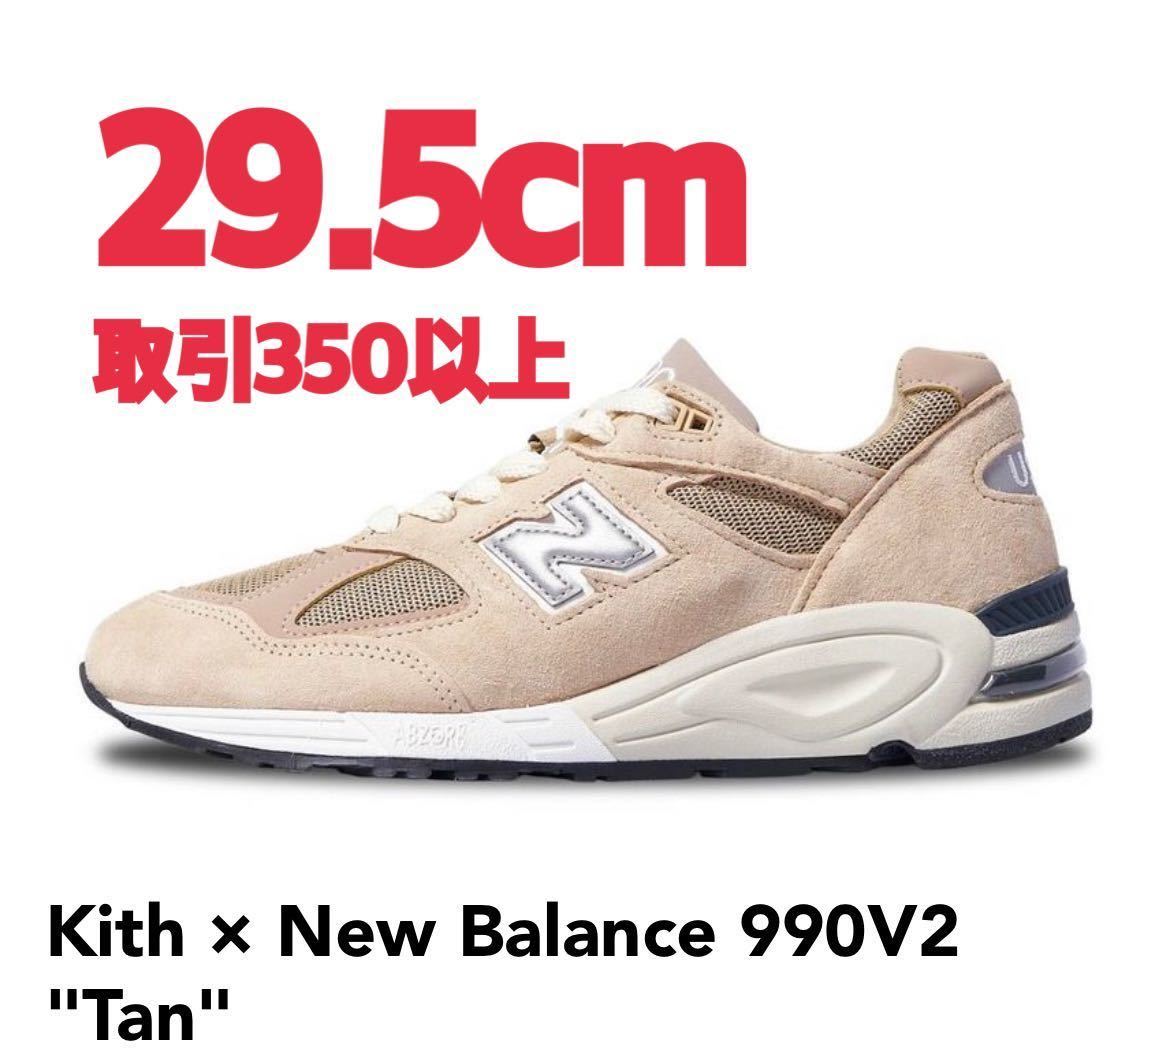 素晴らしい Balance New for Kith 990V2 US11.5 ベージュ タン V2 990